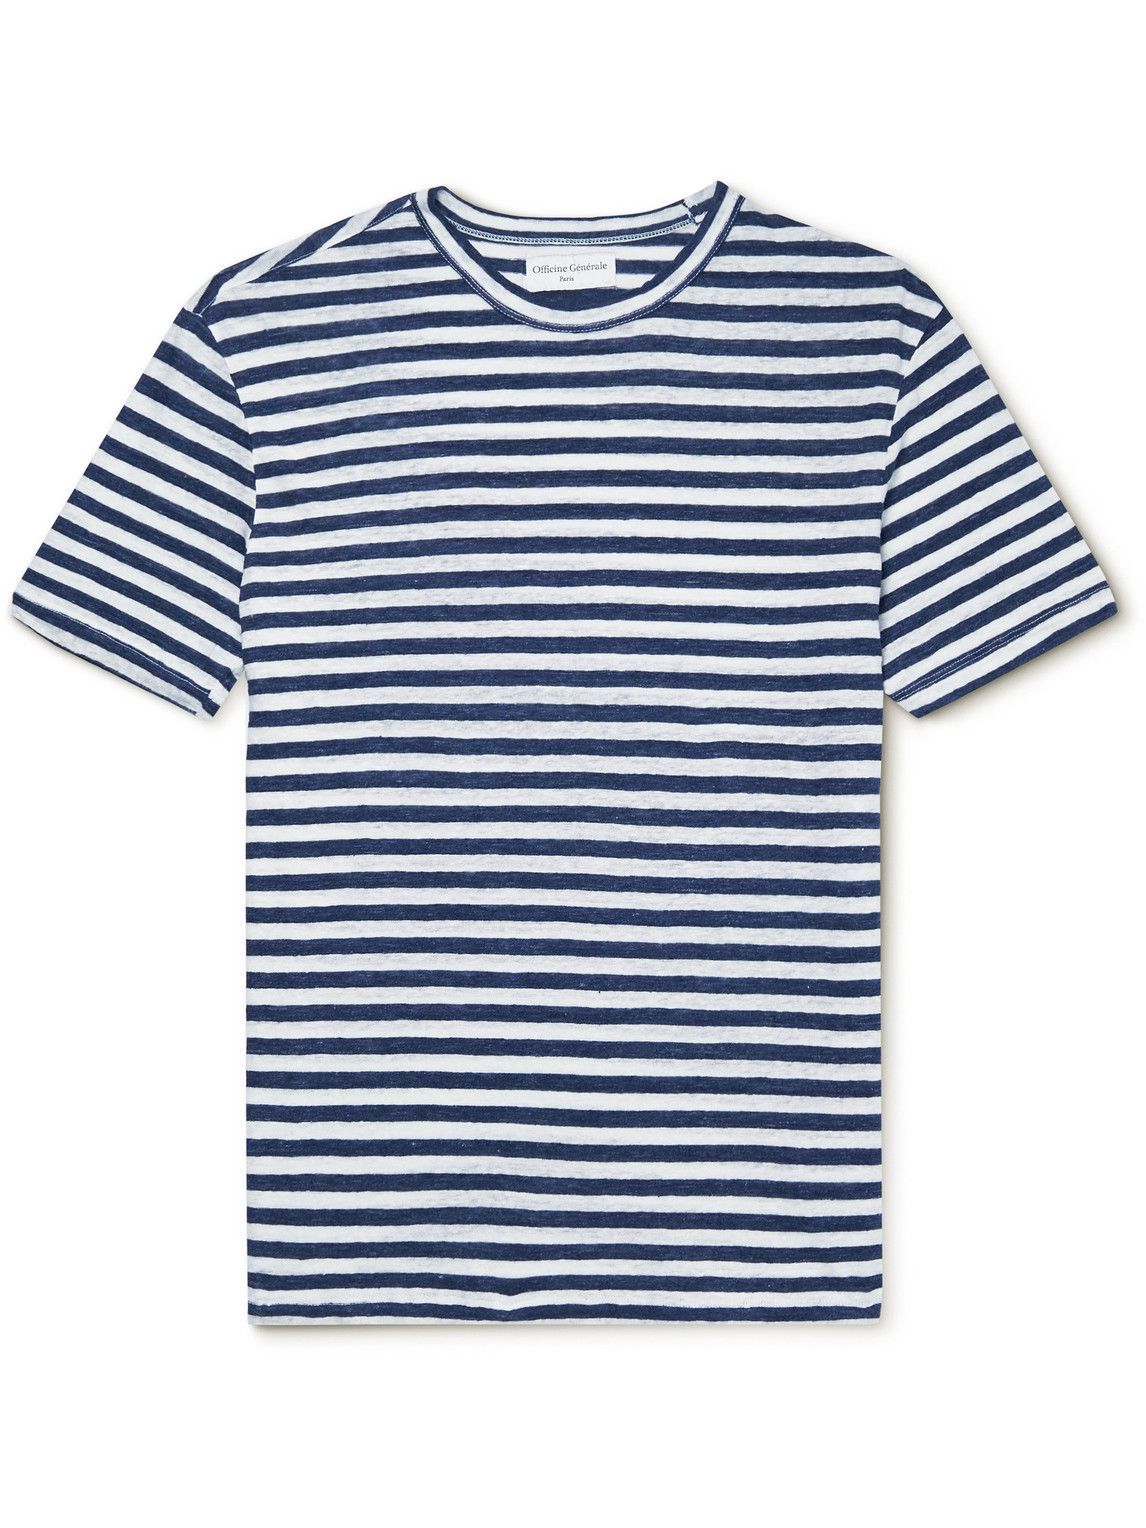 Officine Générale - Striped Linen T-Shirt - Blue Officine Generale